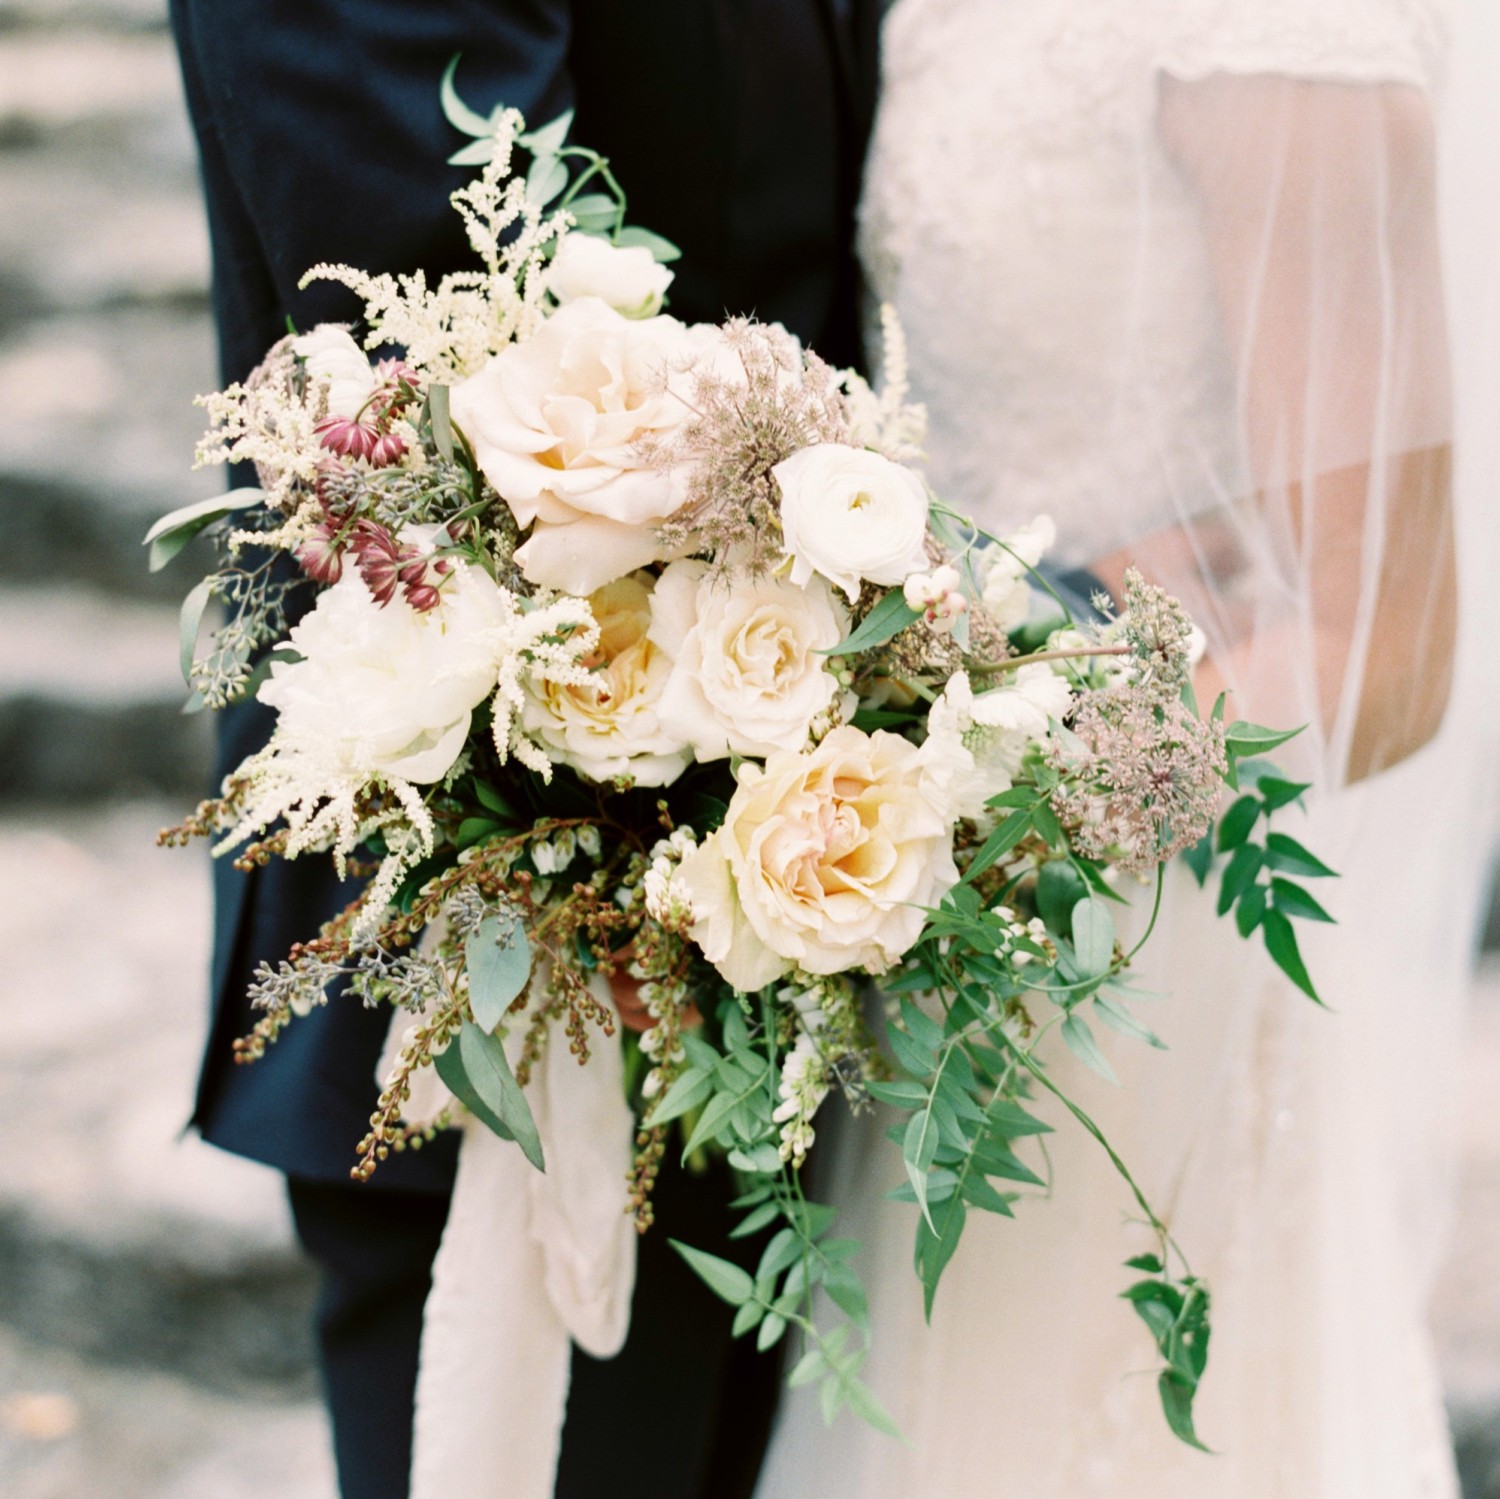 Catch These Bridal Bouquets - Bride's Bouquet Ideas - Flower Magazine